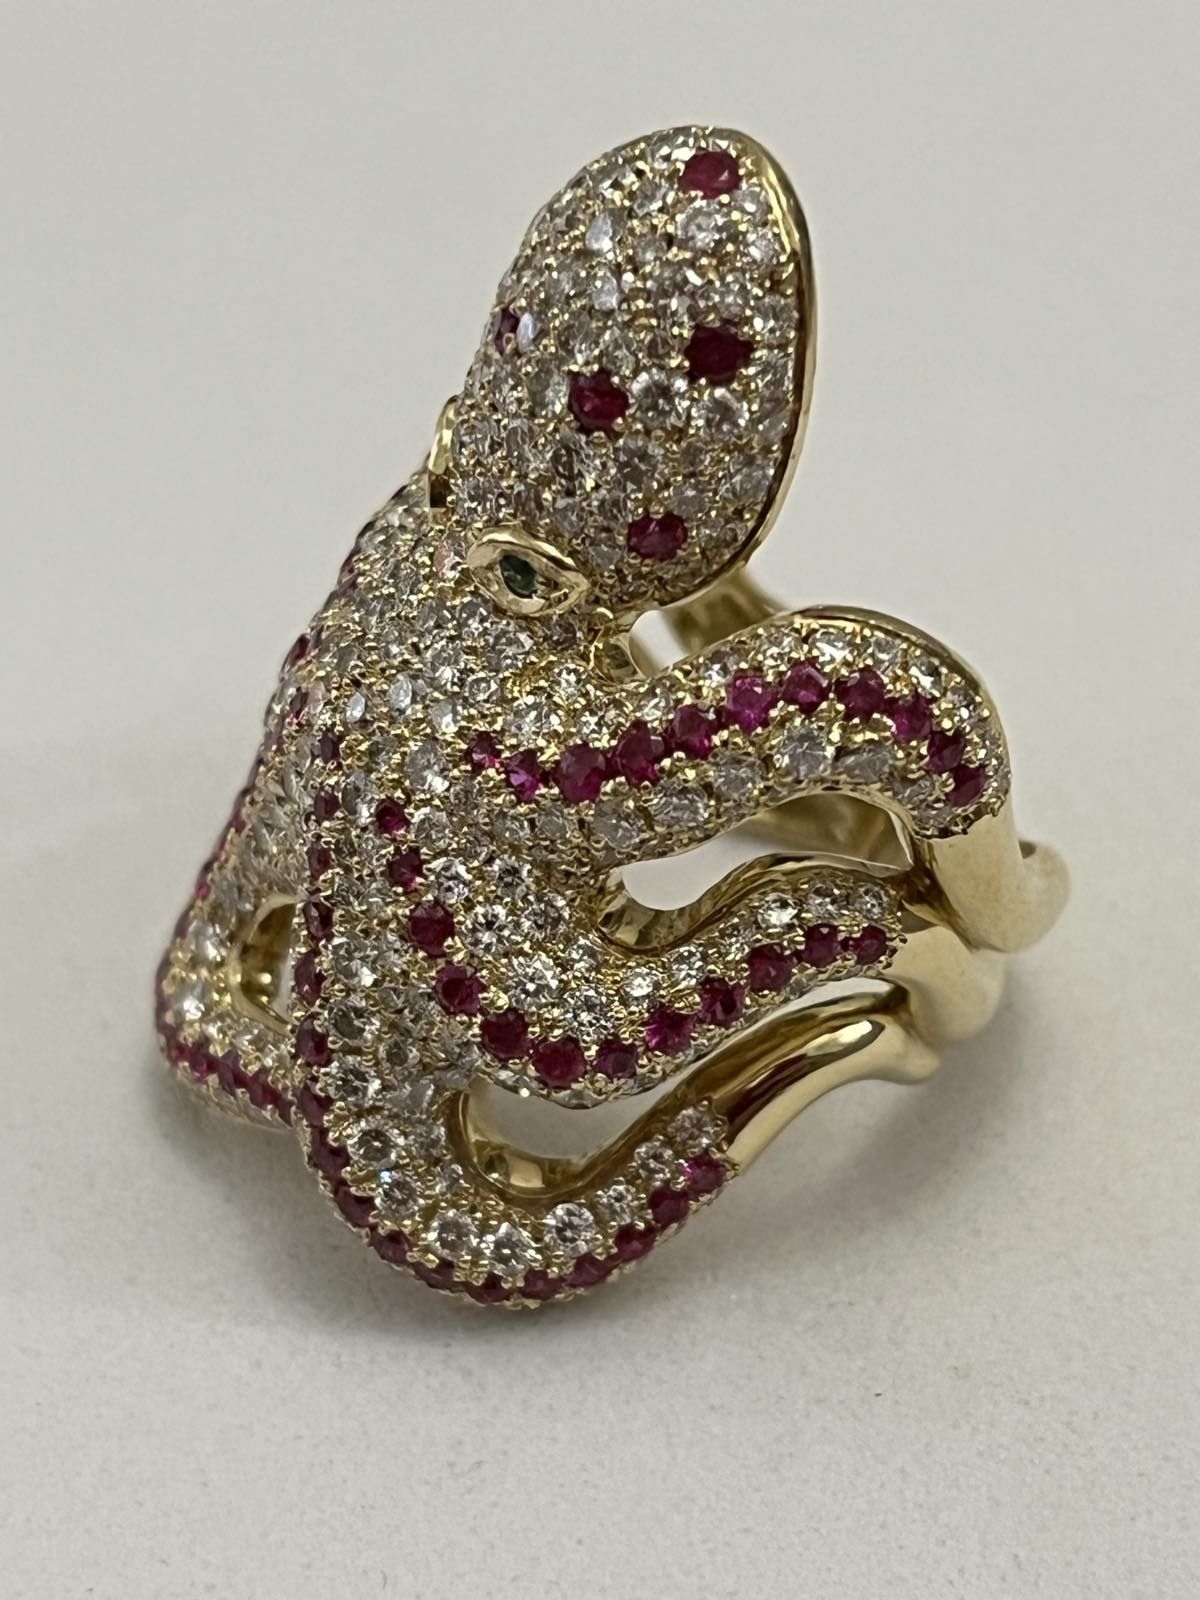 Золотое кольцо  Осьминог 5.23 карат. Бриллианты, Рубины, Изумруды.